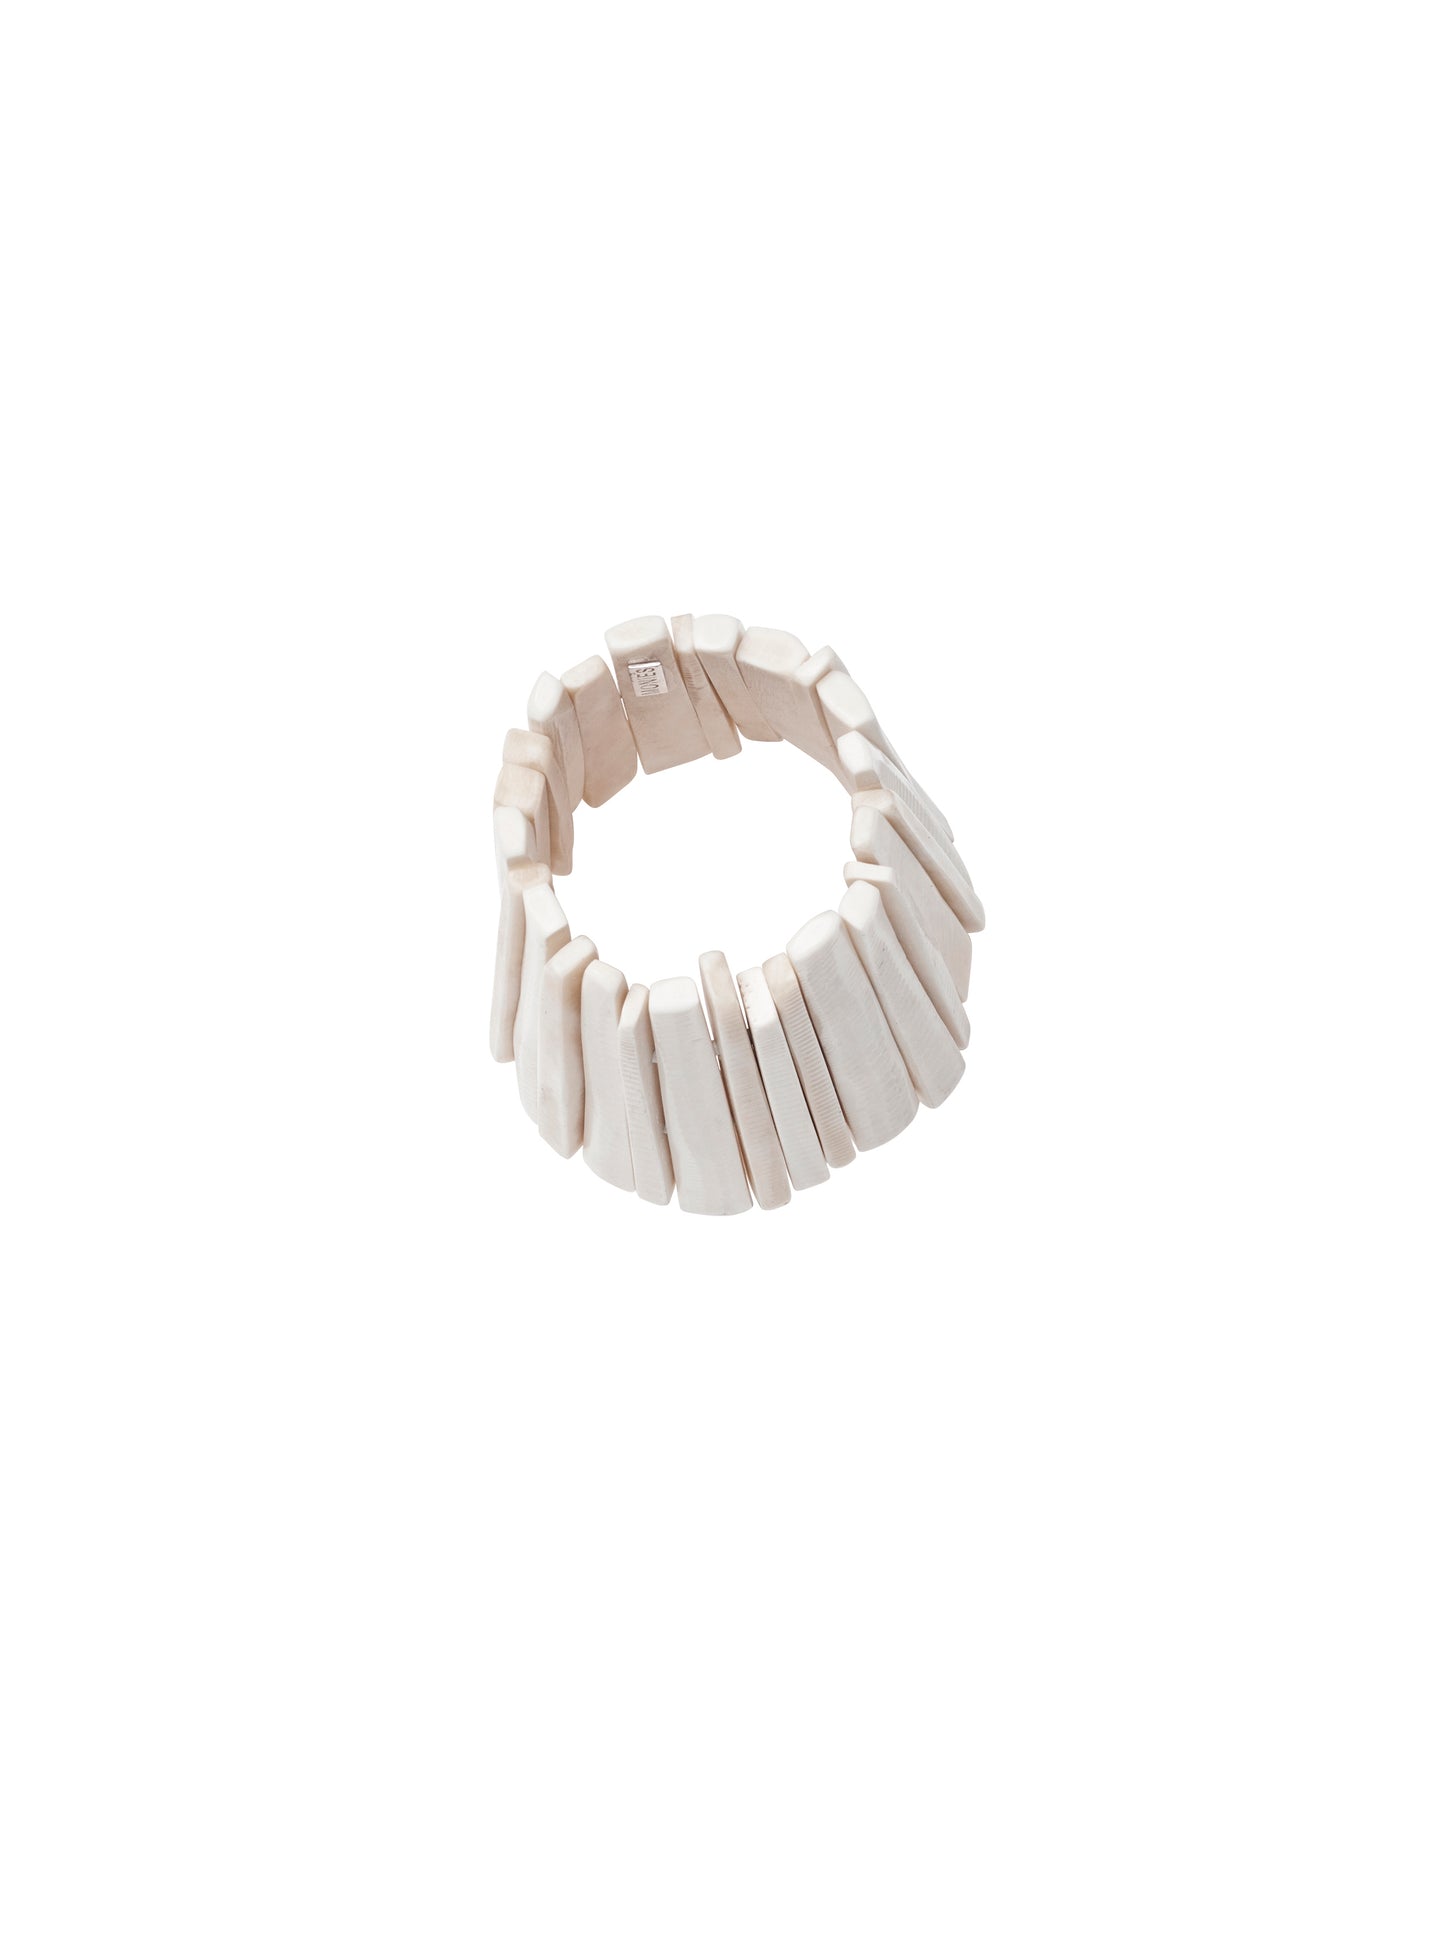 Bracelet in white bone